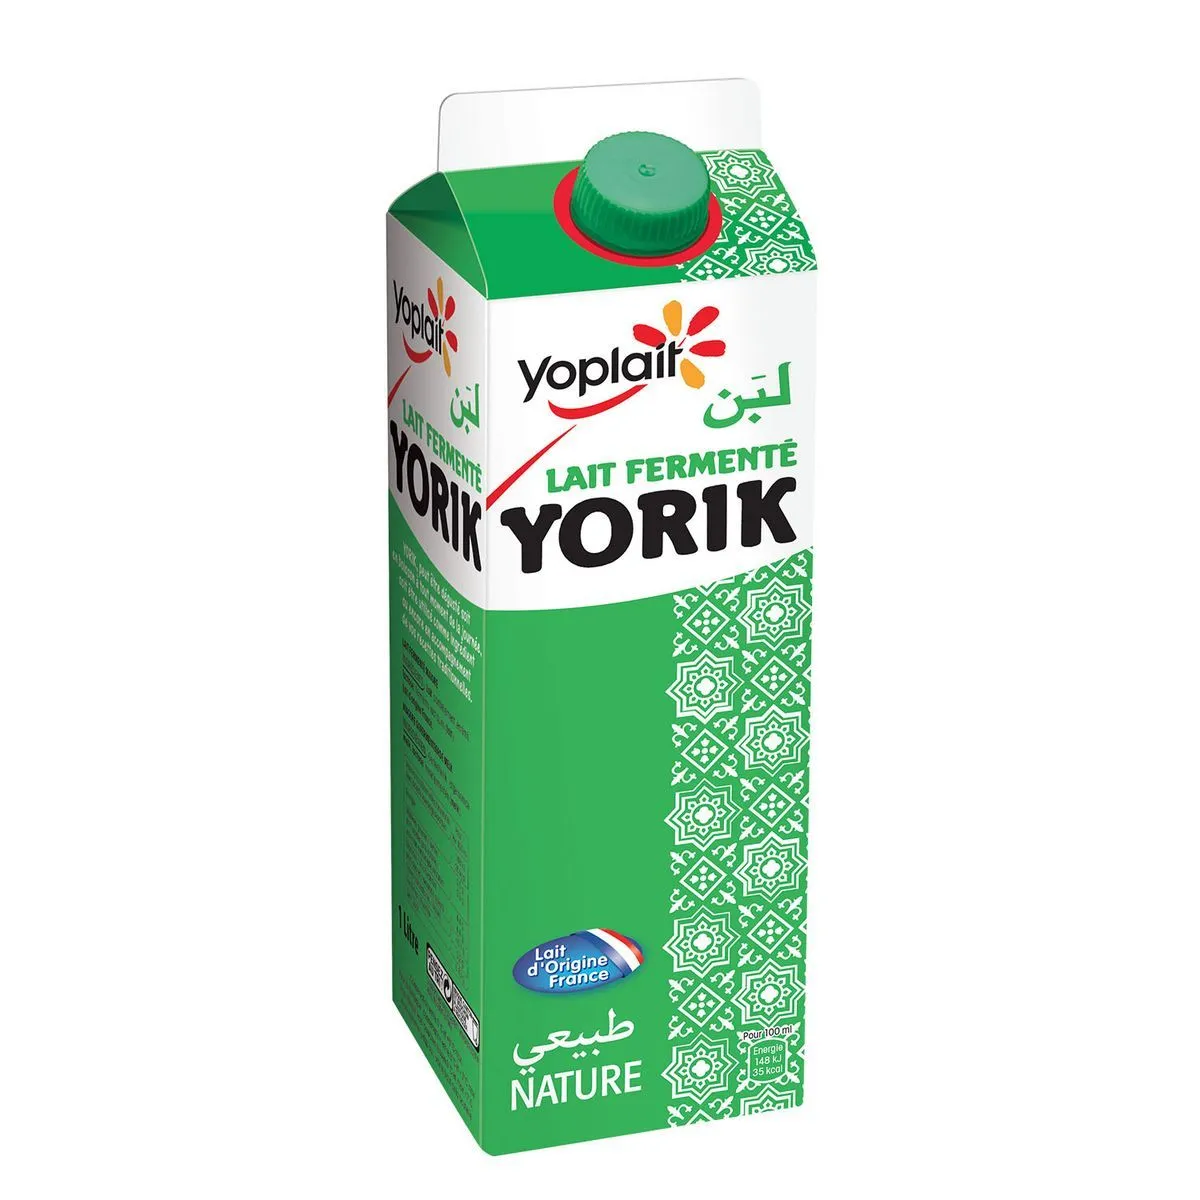 lait fermenté yorik yoplait